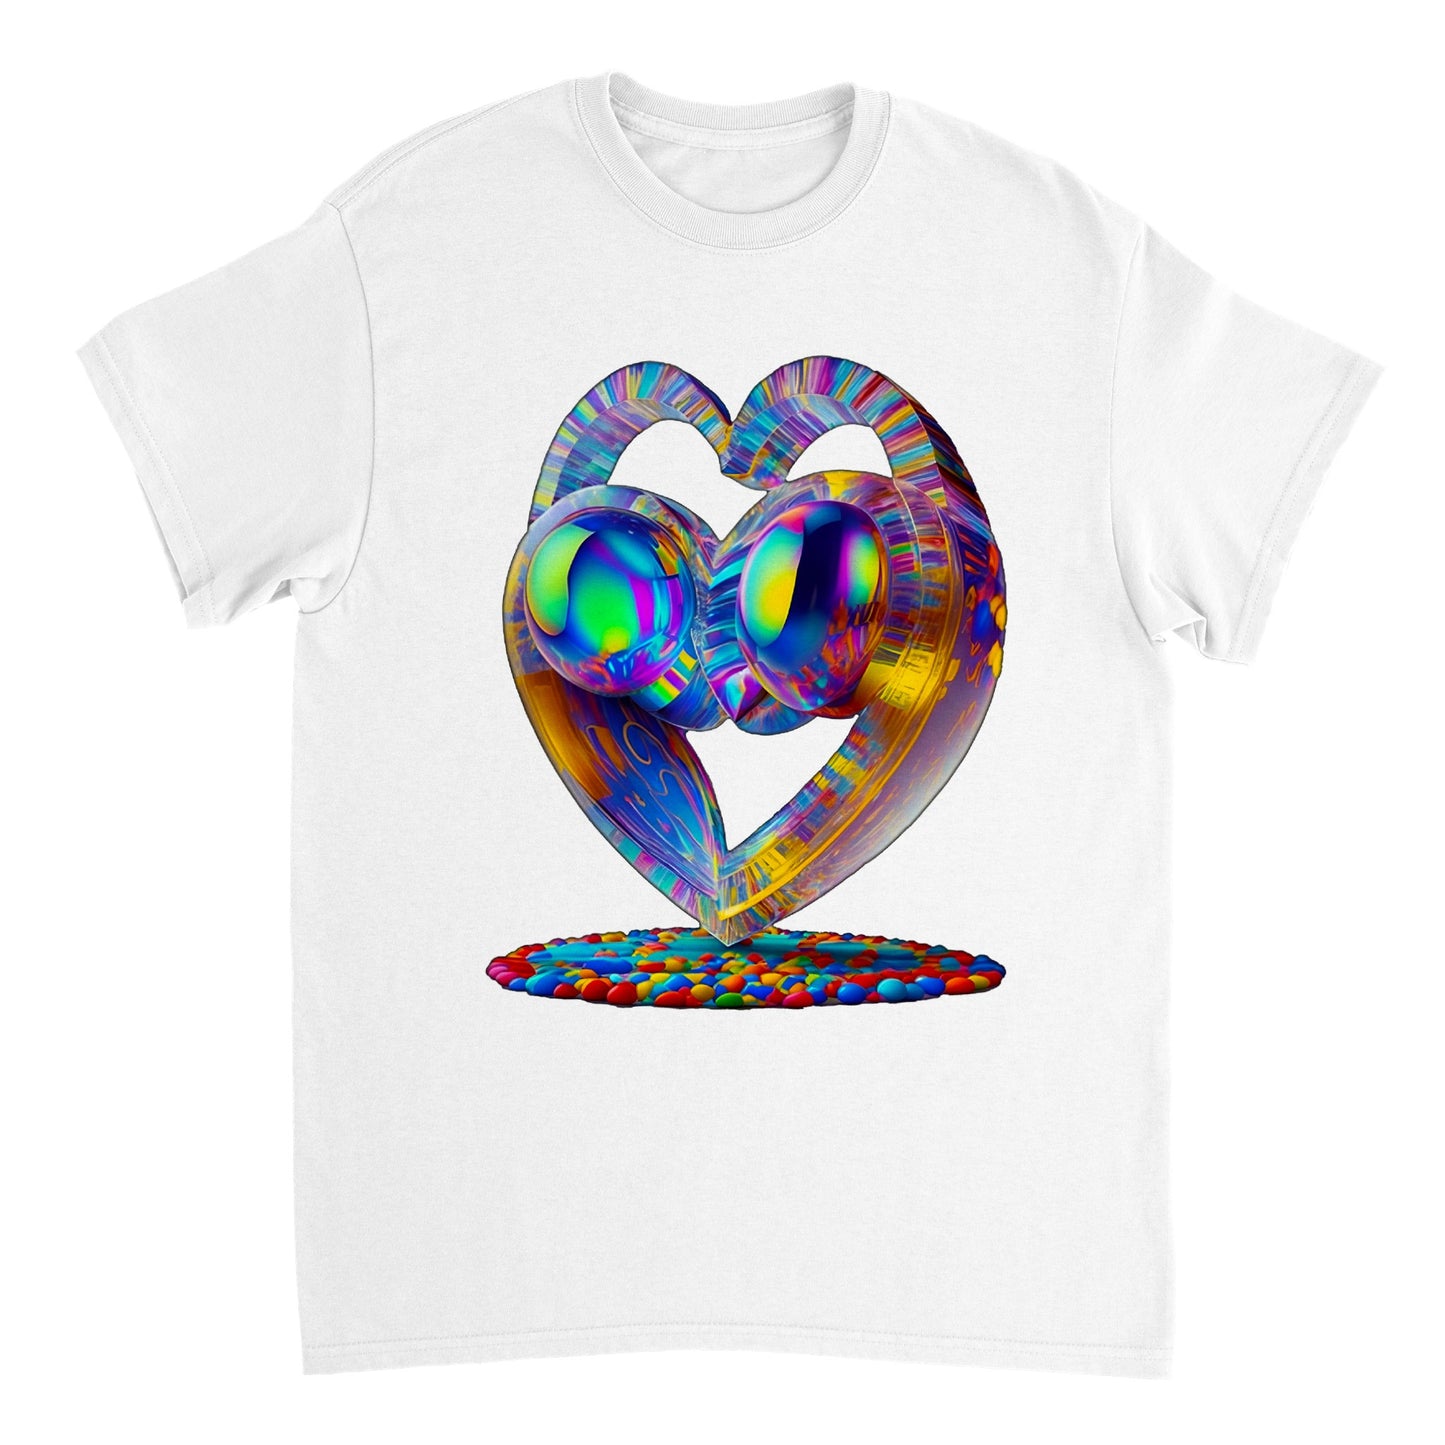 Love Heart - Heavyweight Unisex Crewneck T-shirt 74